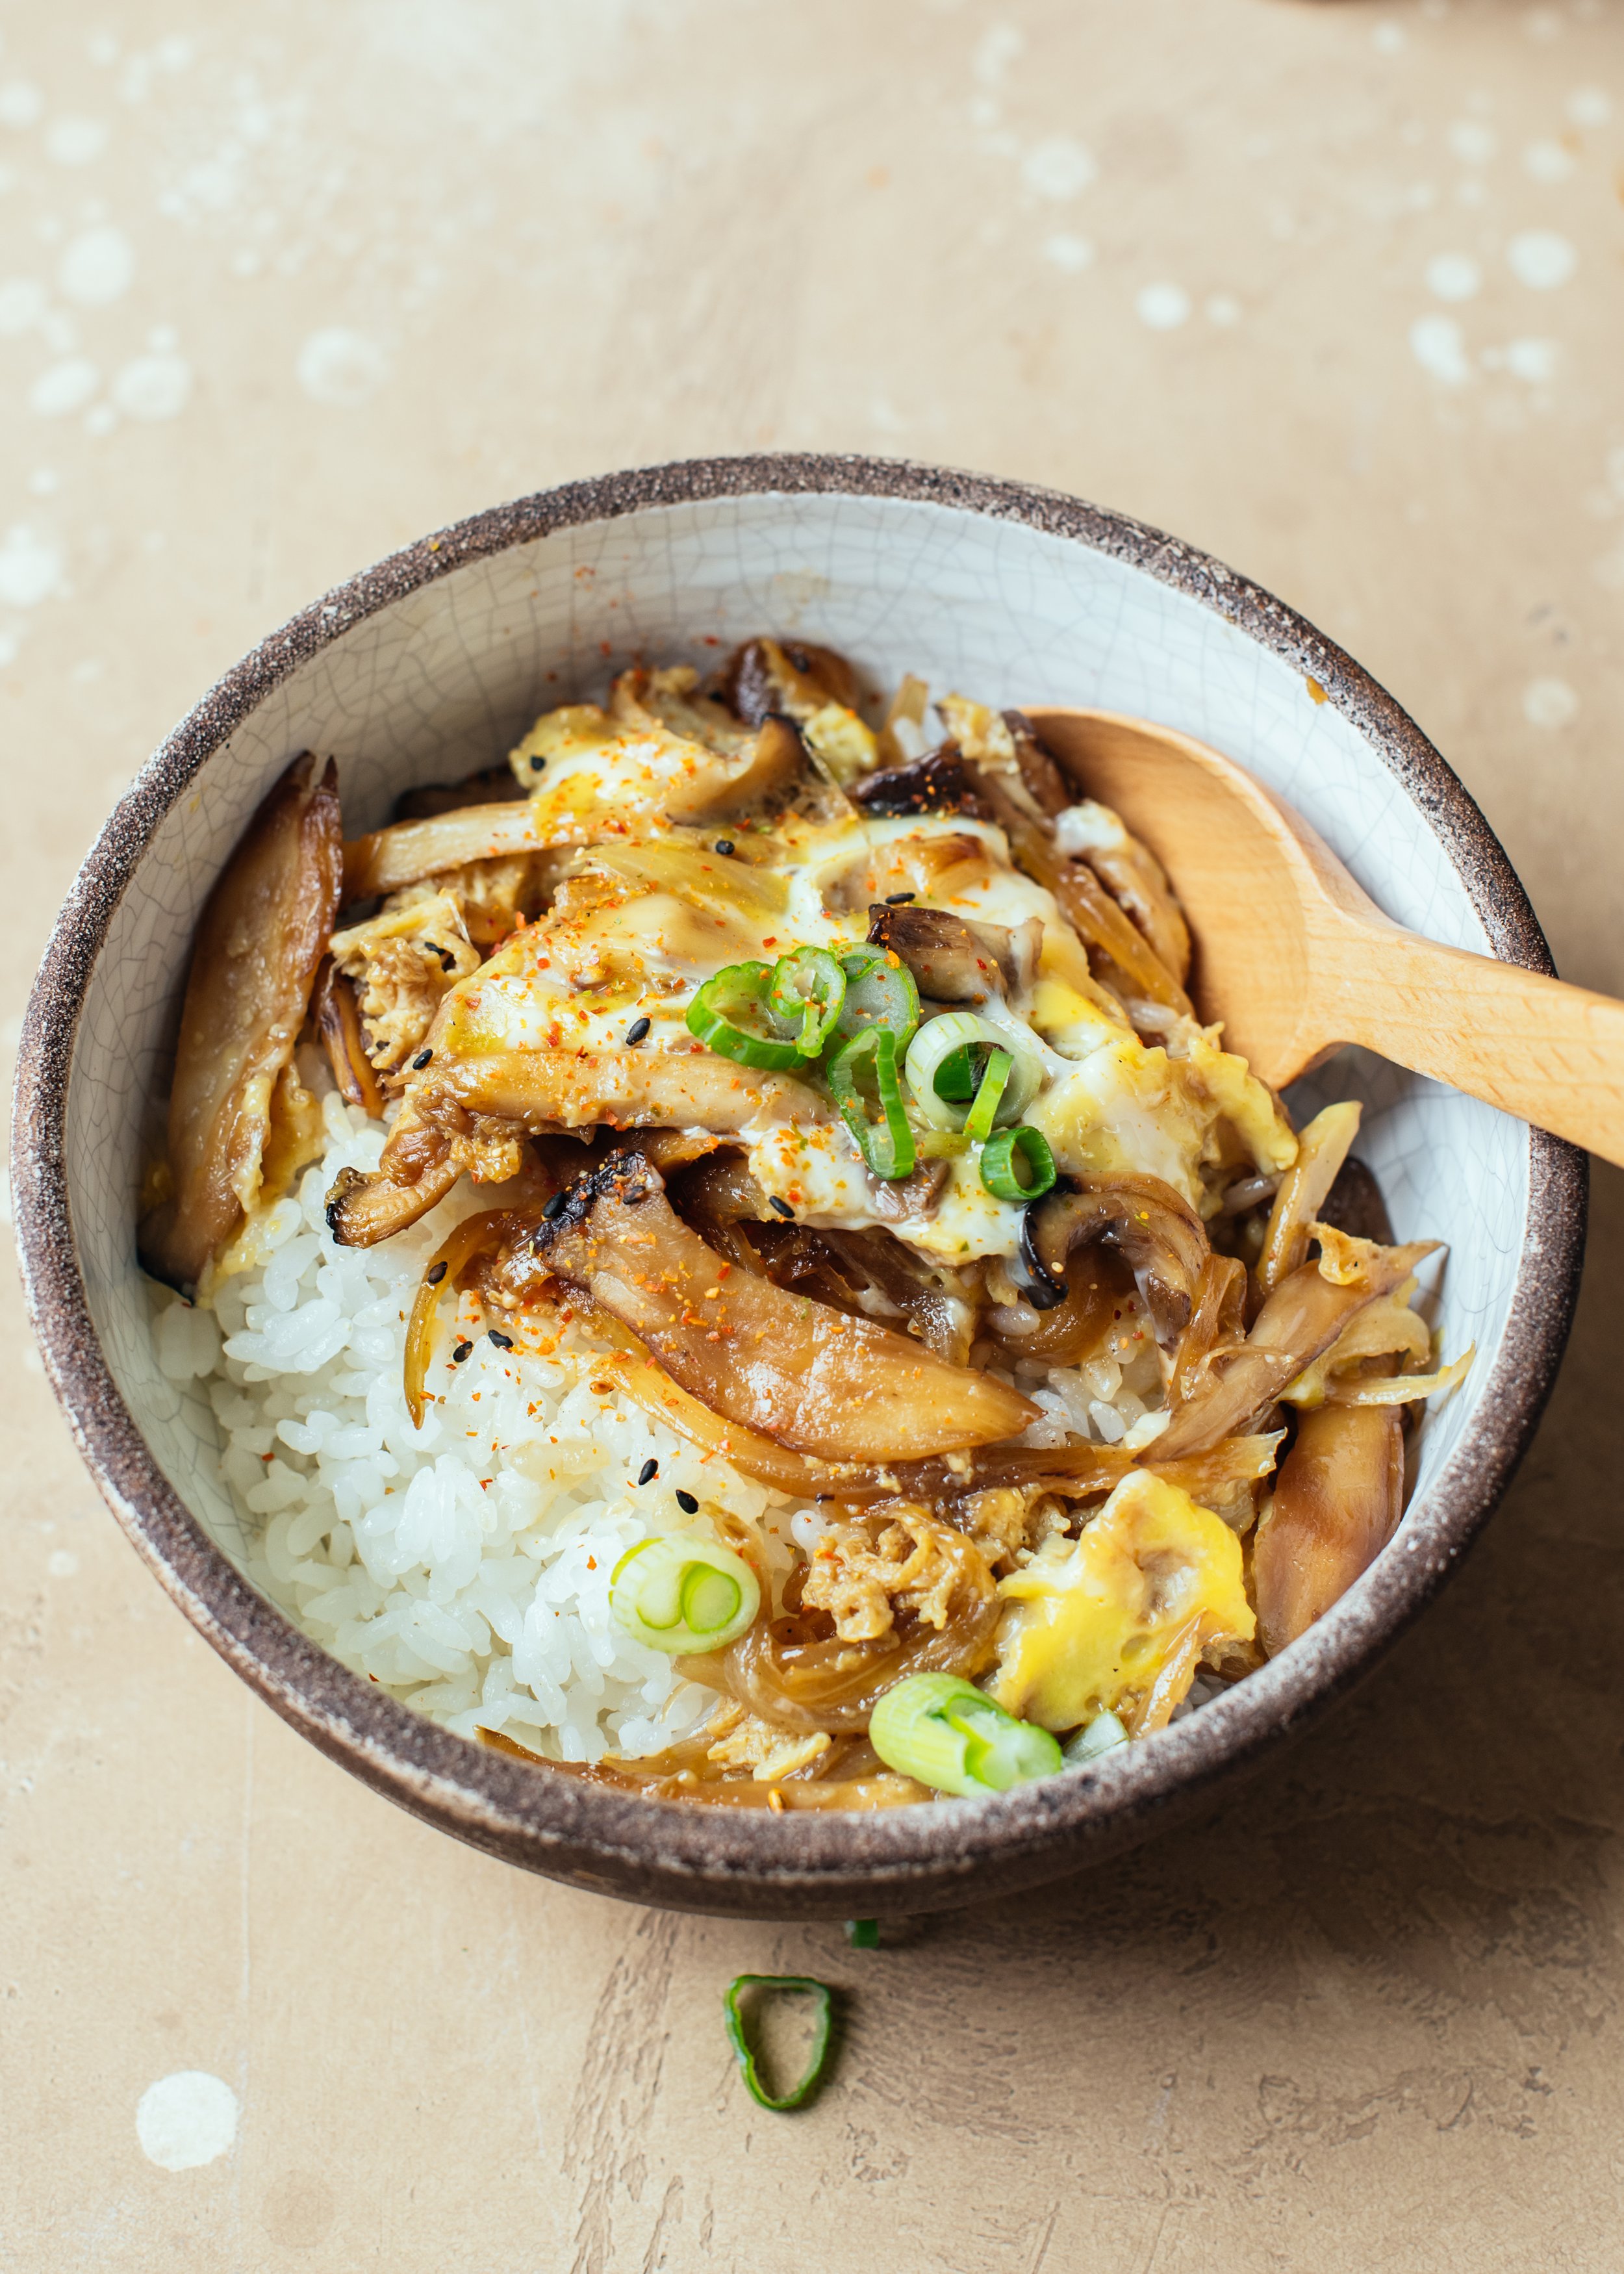 Mushroom and Egg "Gyudon" Japanese Rice Bowl